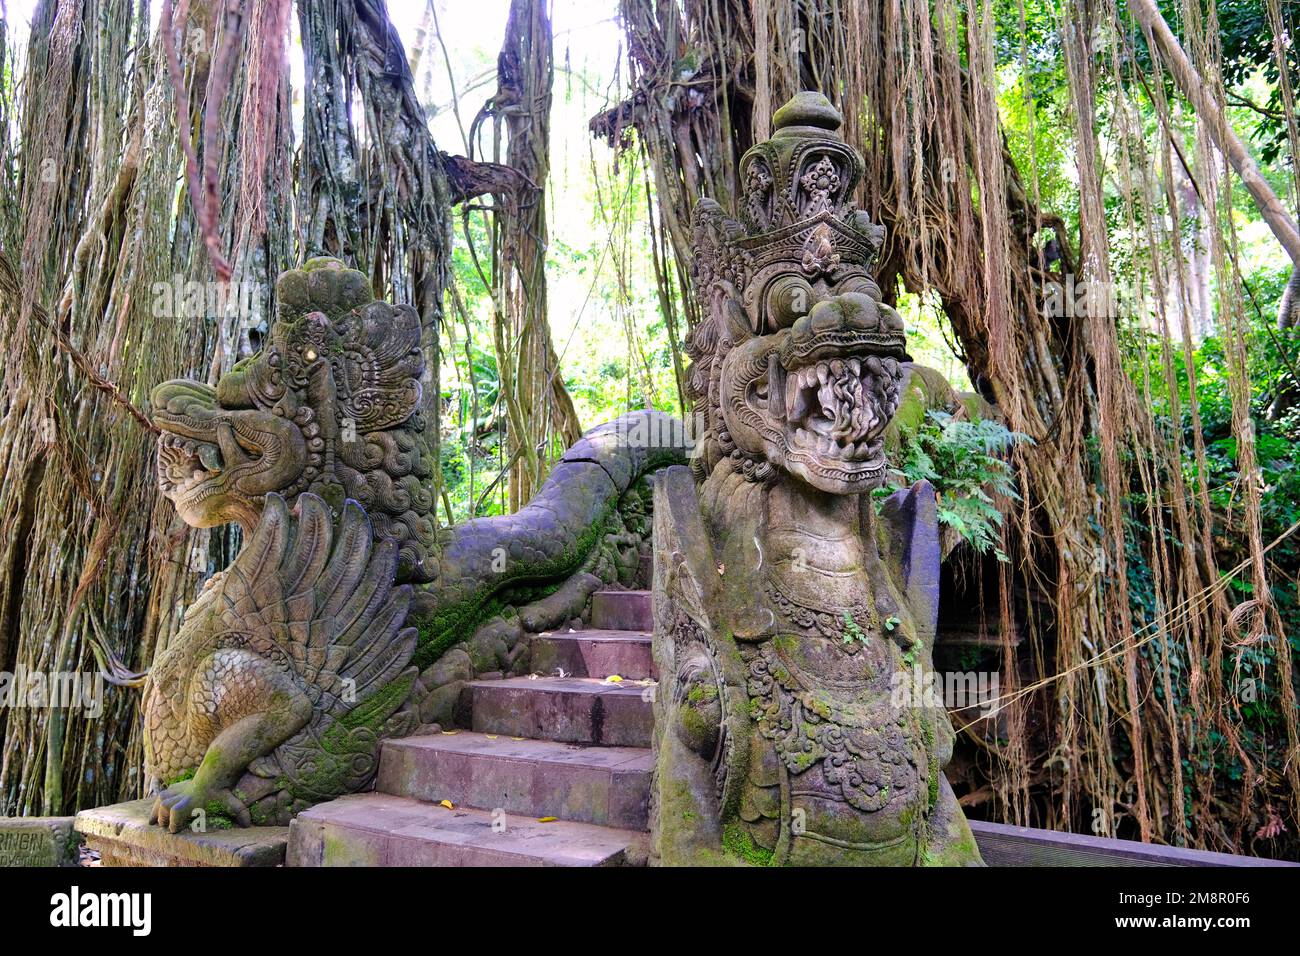 Indonesia Bali - Ubud Monkey forest bridge Stock Photo